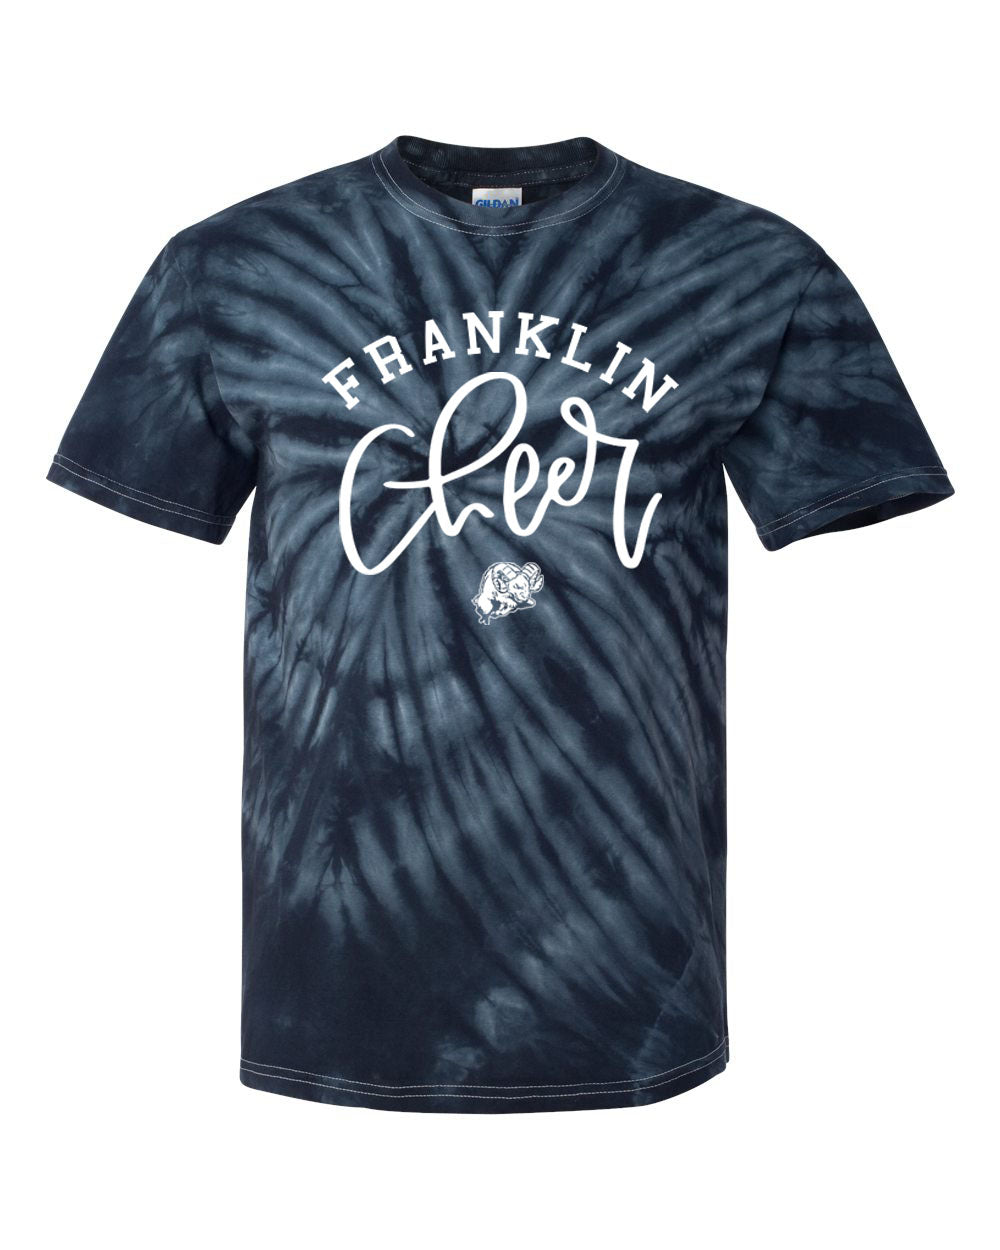 Franklin Cheer Tie Dye t-shirt Design 3